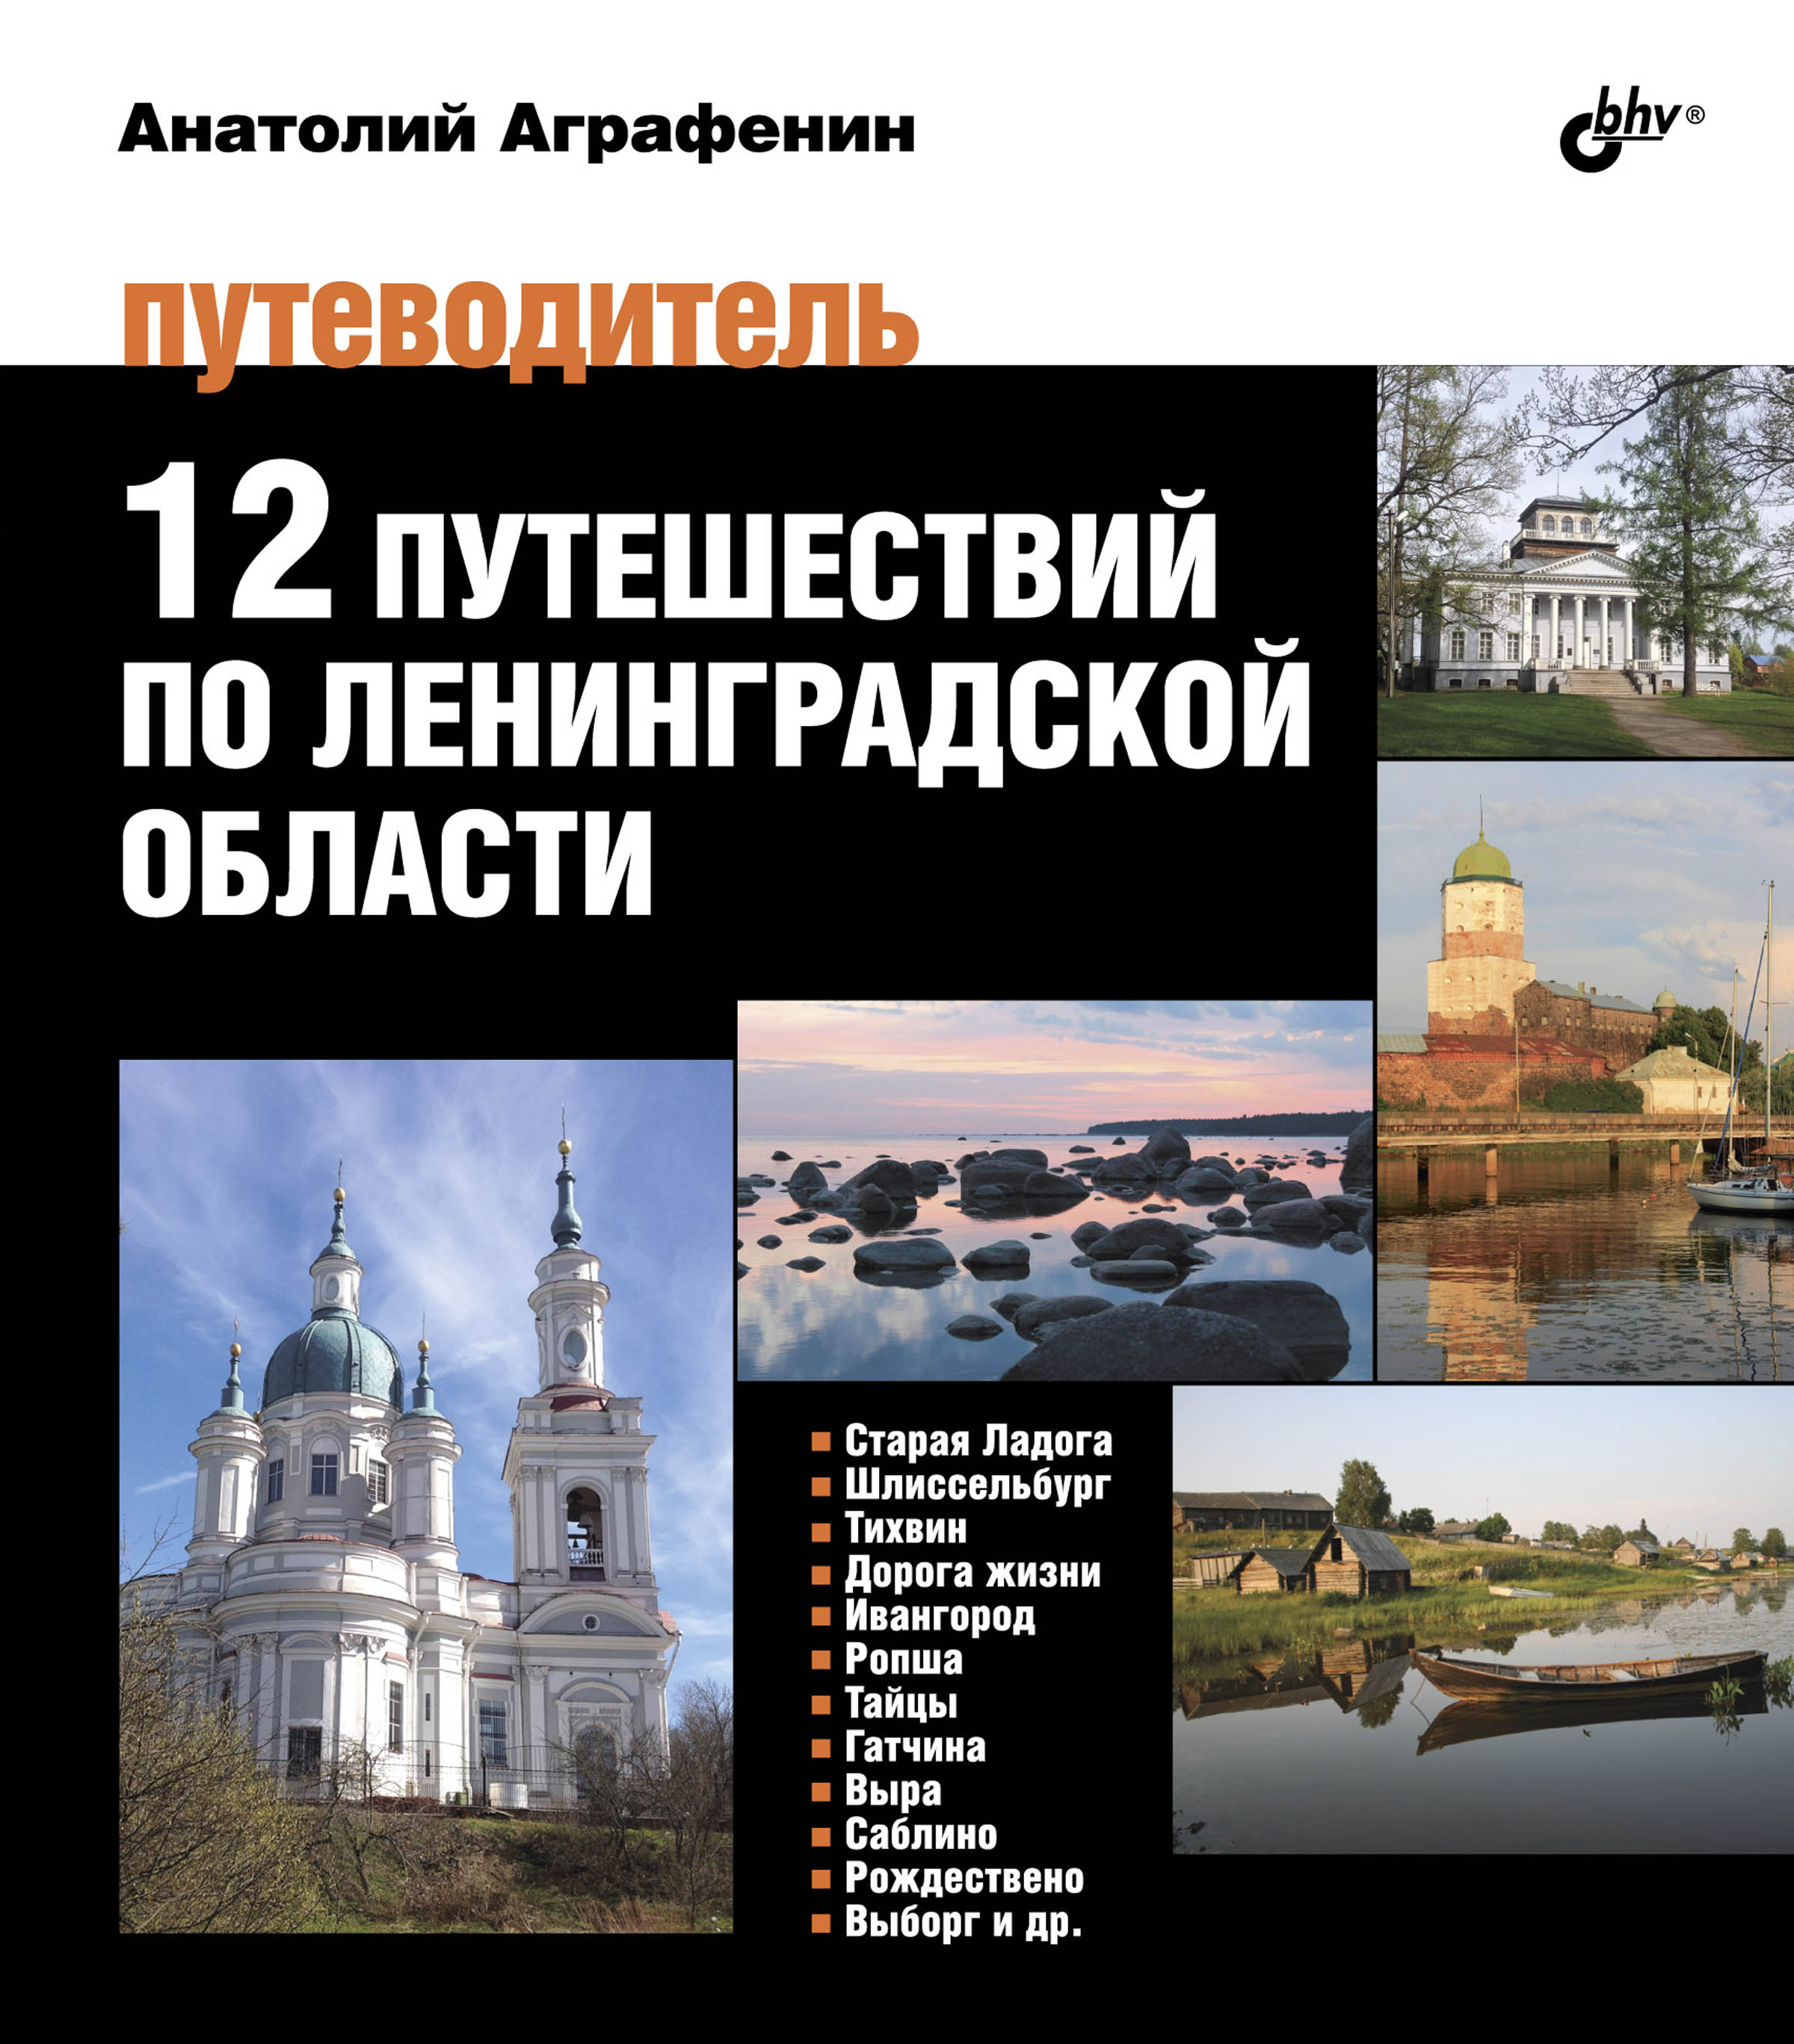 12путешествий по Ленинградской области. Путеводитель